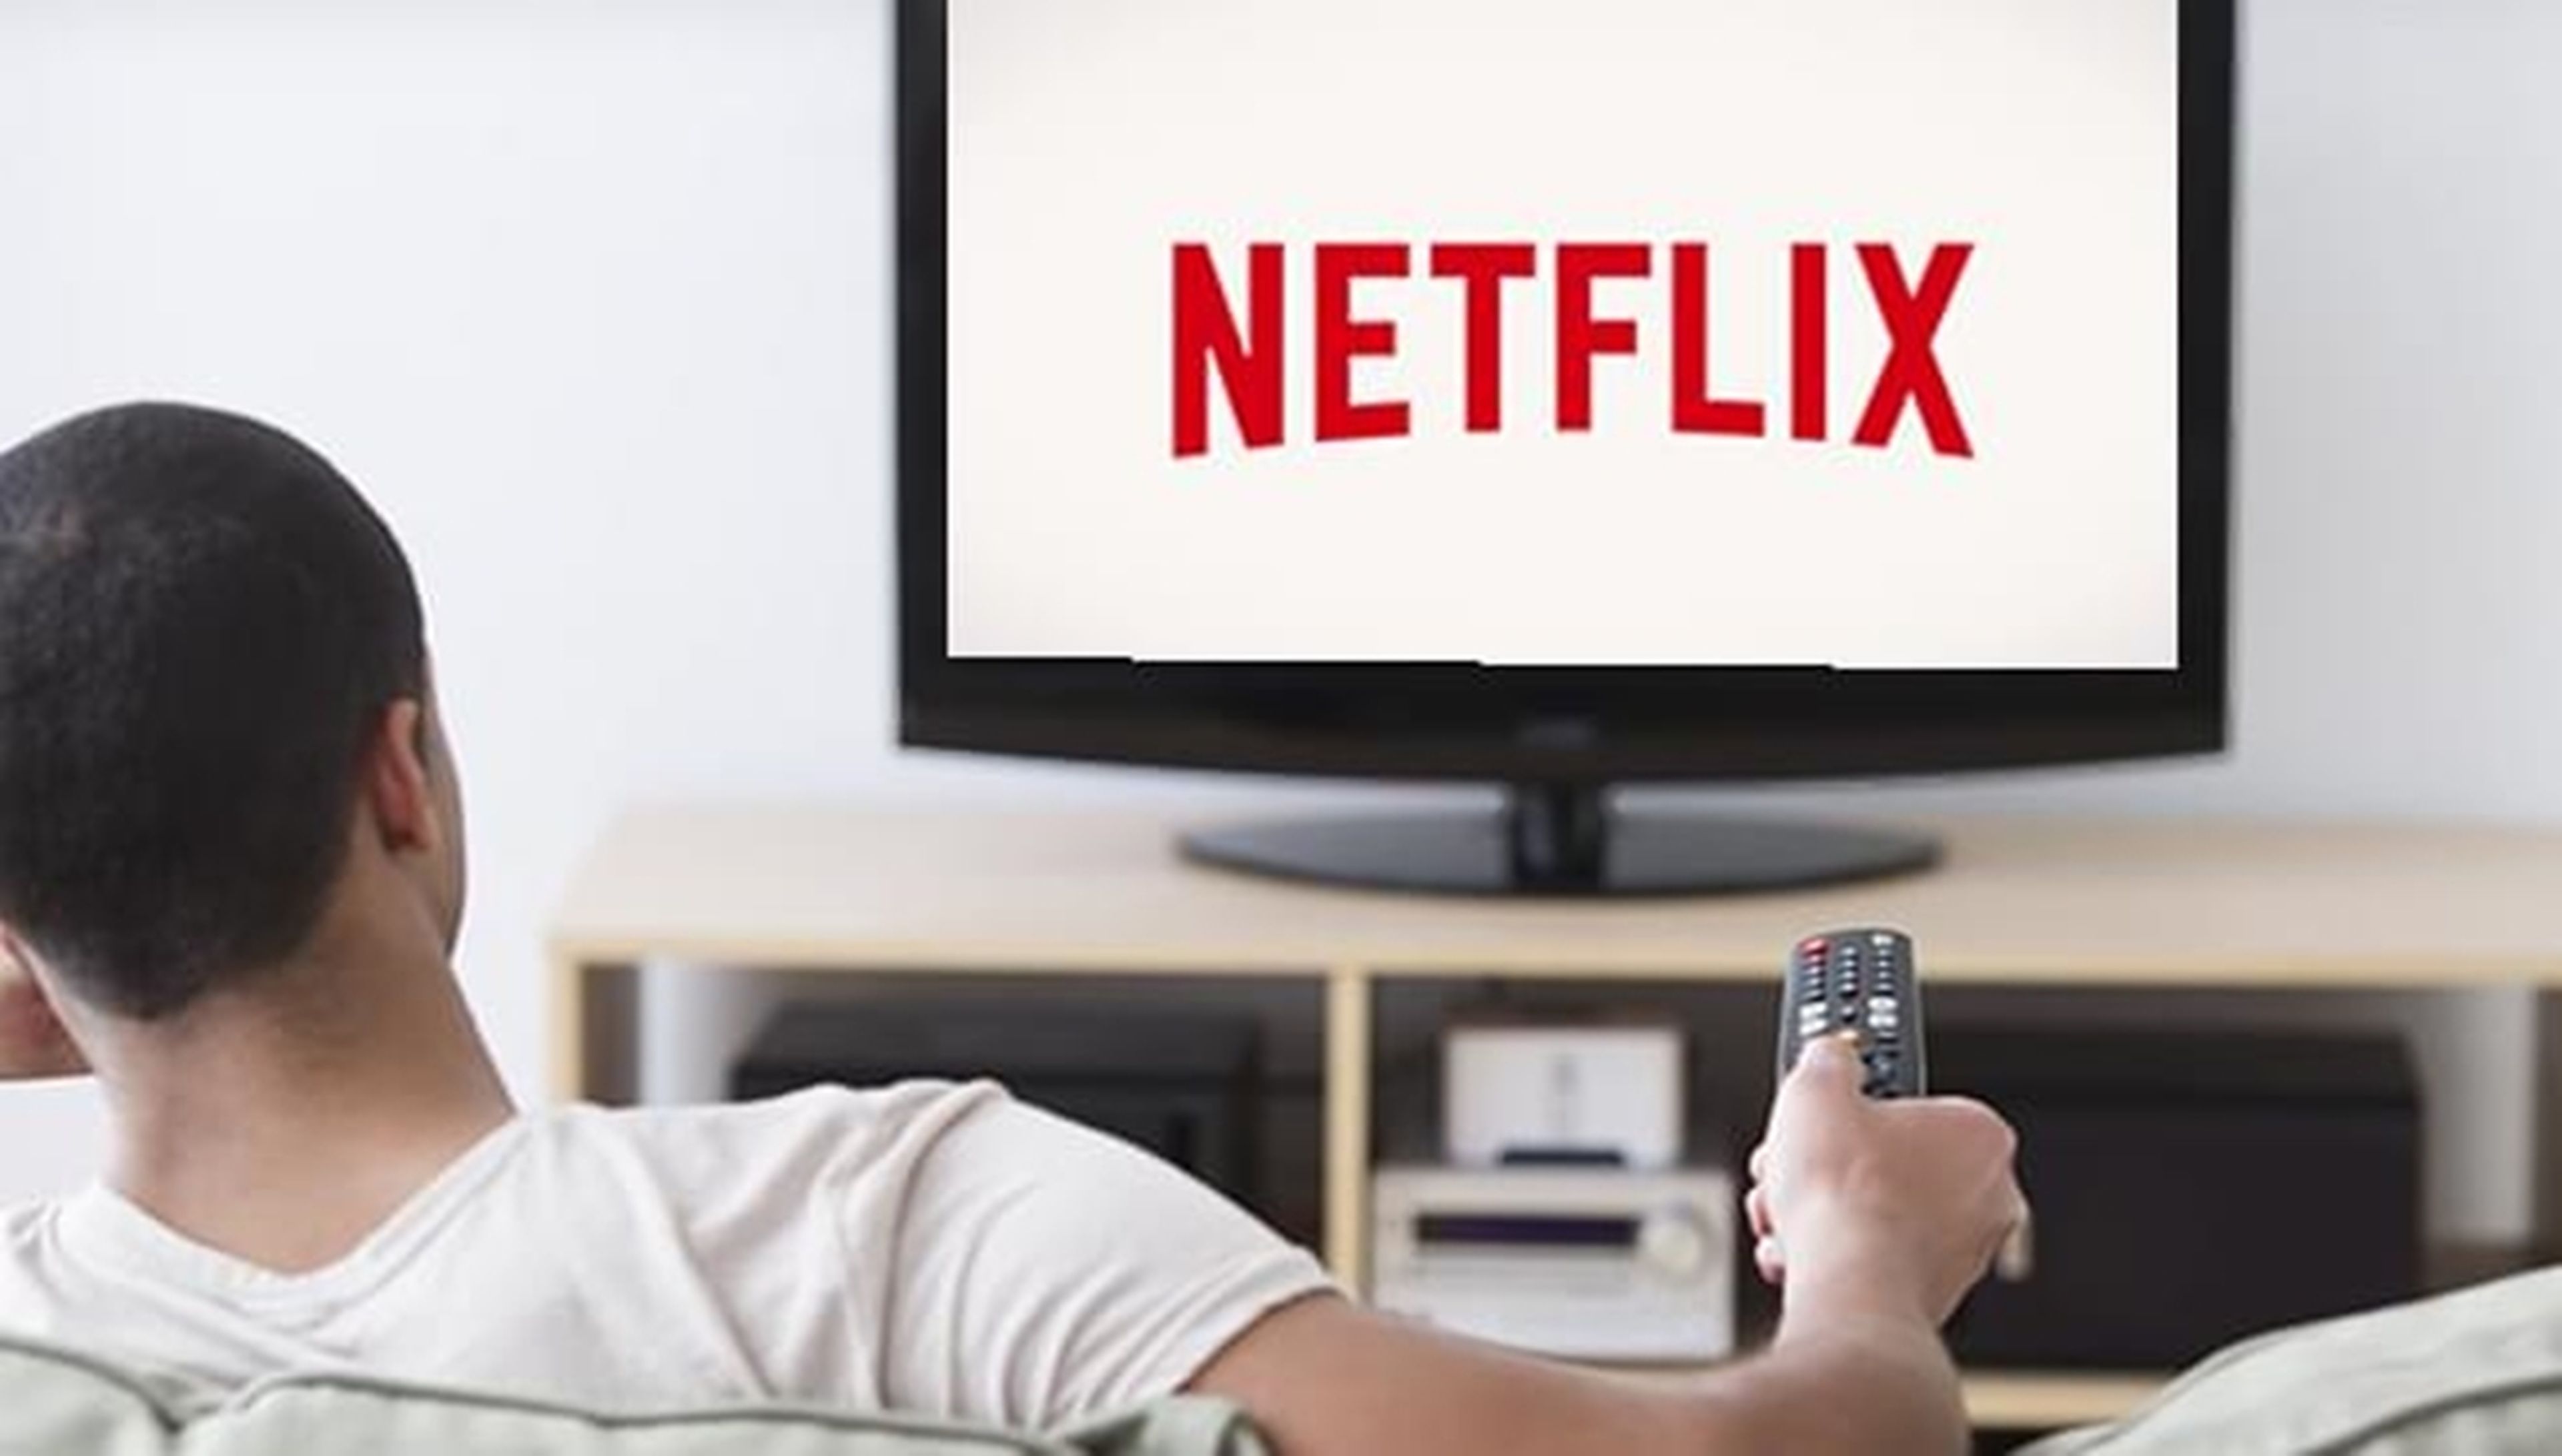 Netflix mide su audiencia en tres categorías: "starters", "watchers" y "completers"